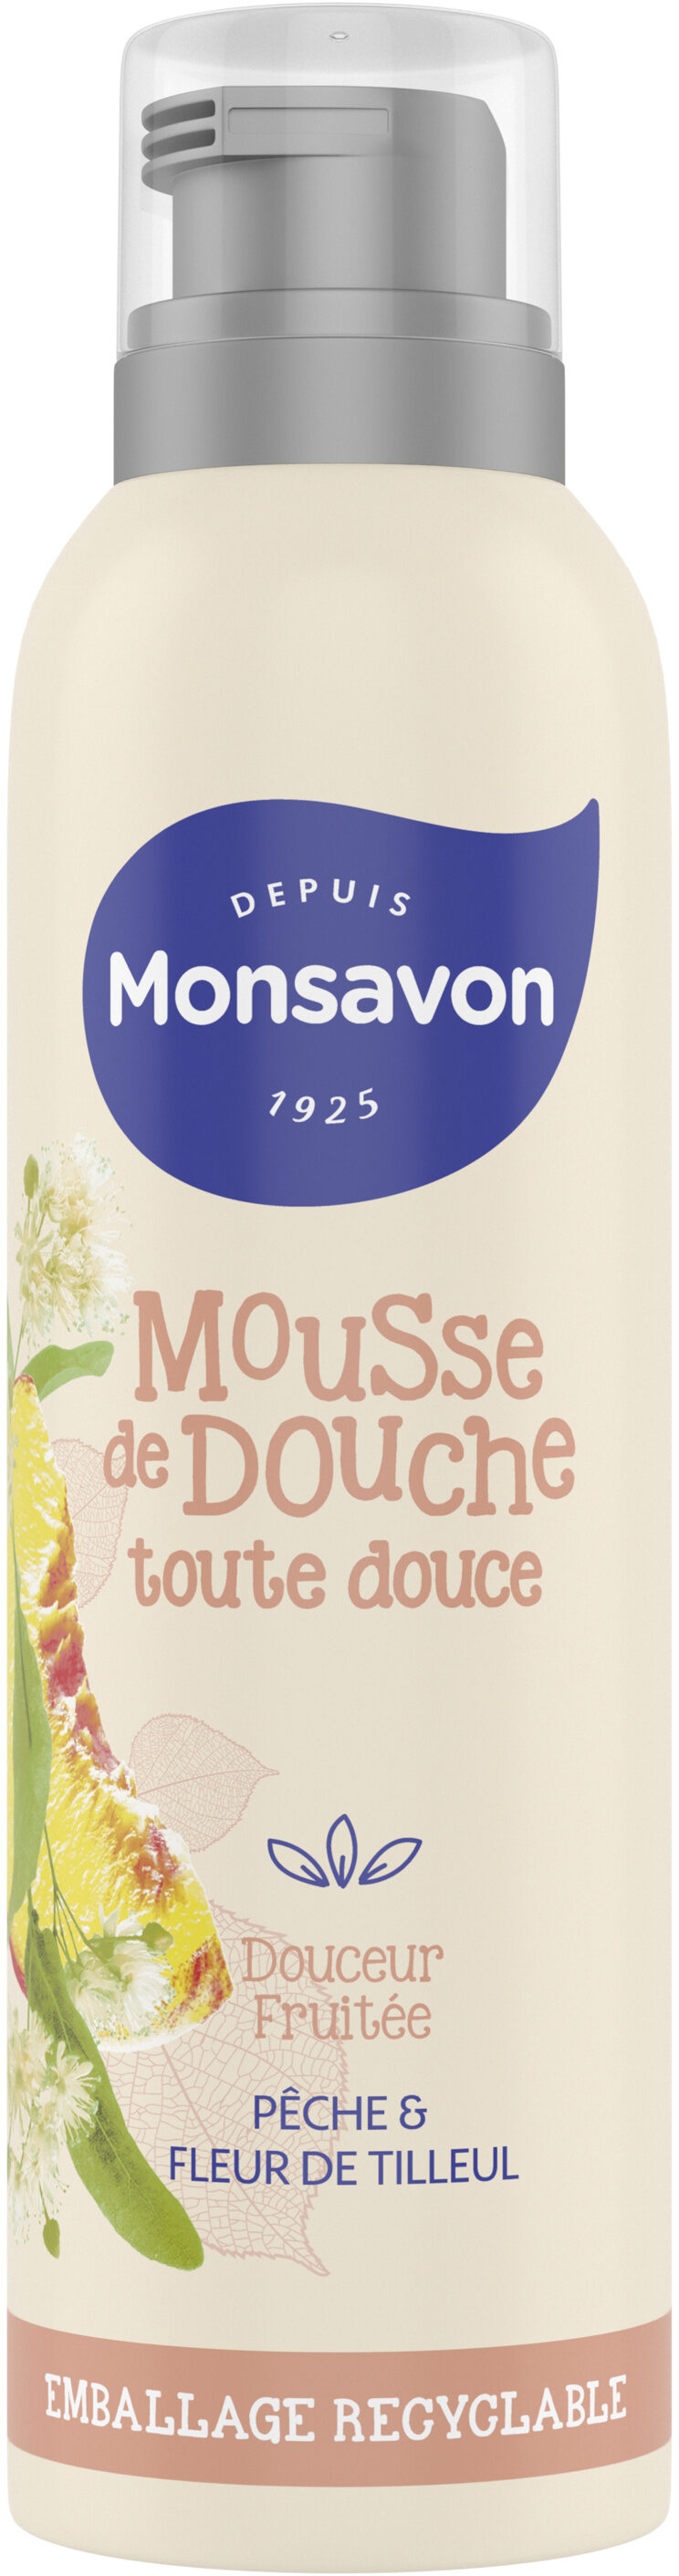 Monsavon Gel Douche Mousse Douceur Fruitée Pêche & Tilleul - Produit - fr